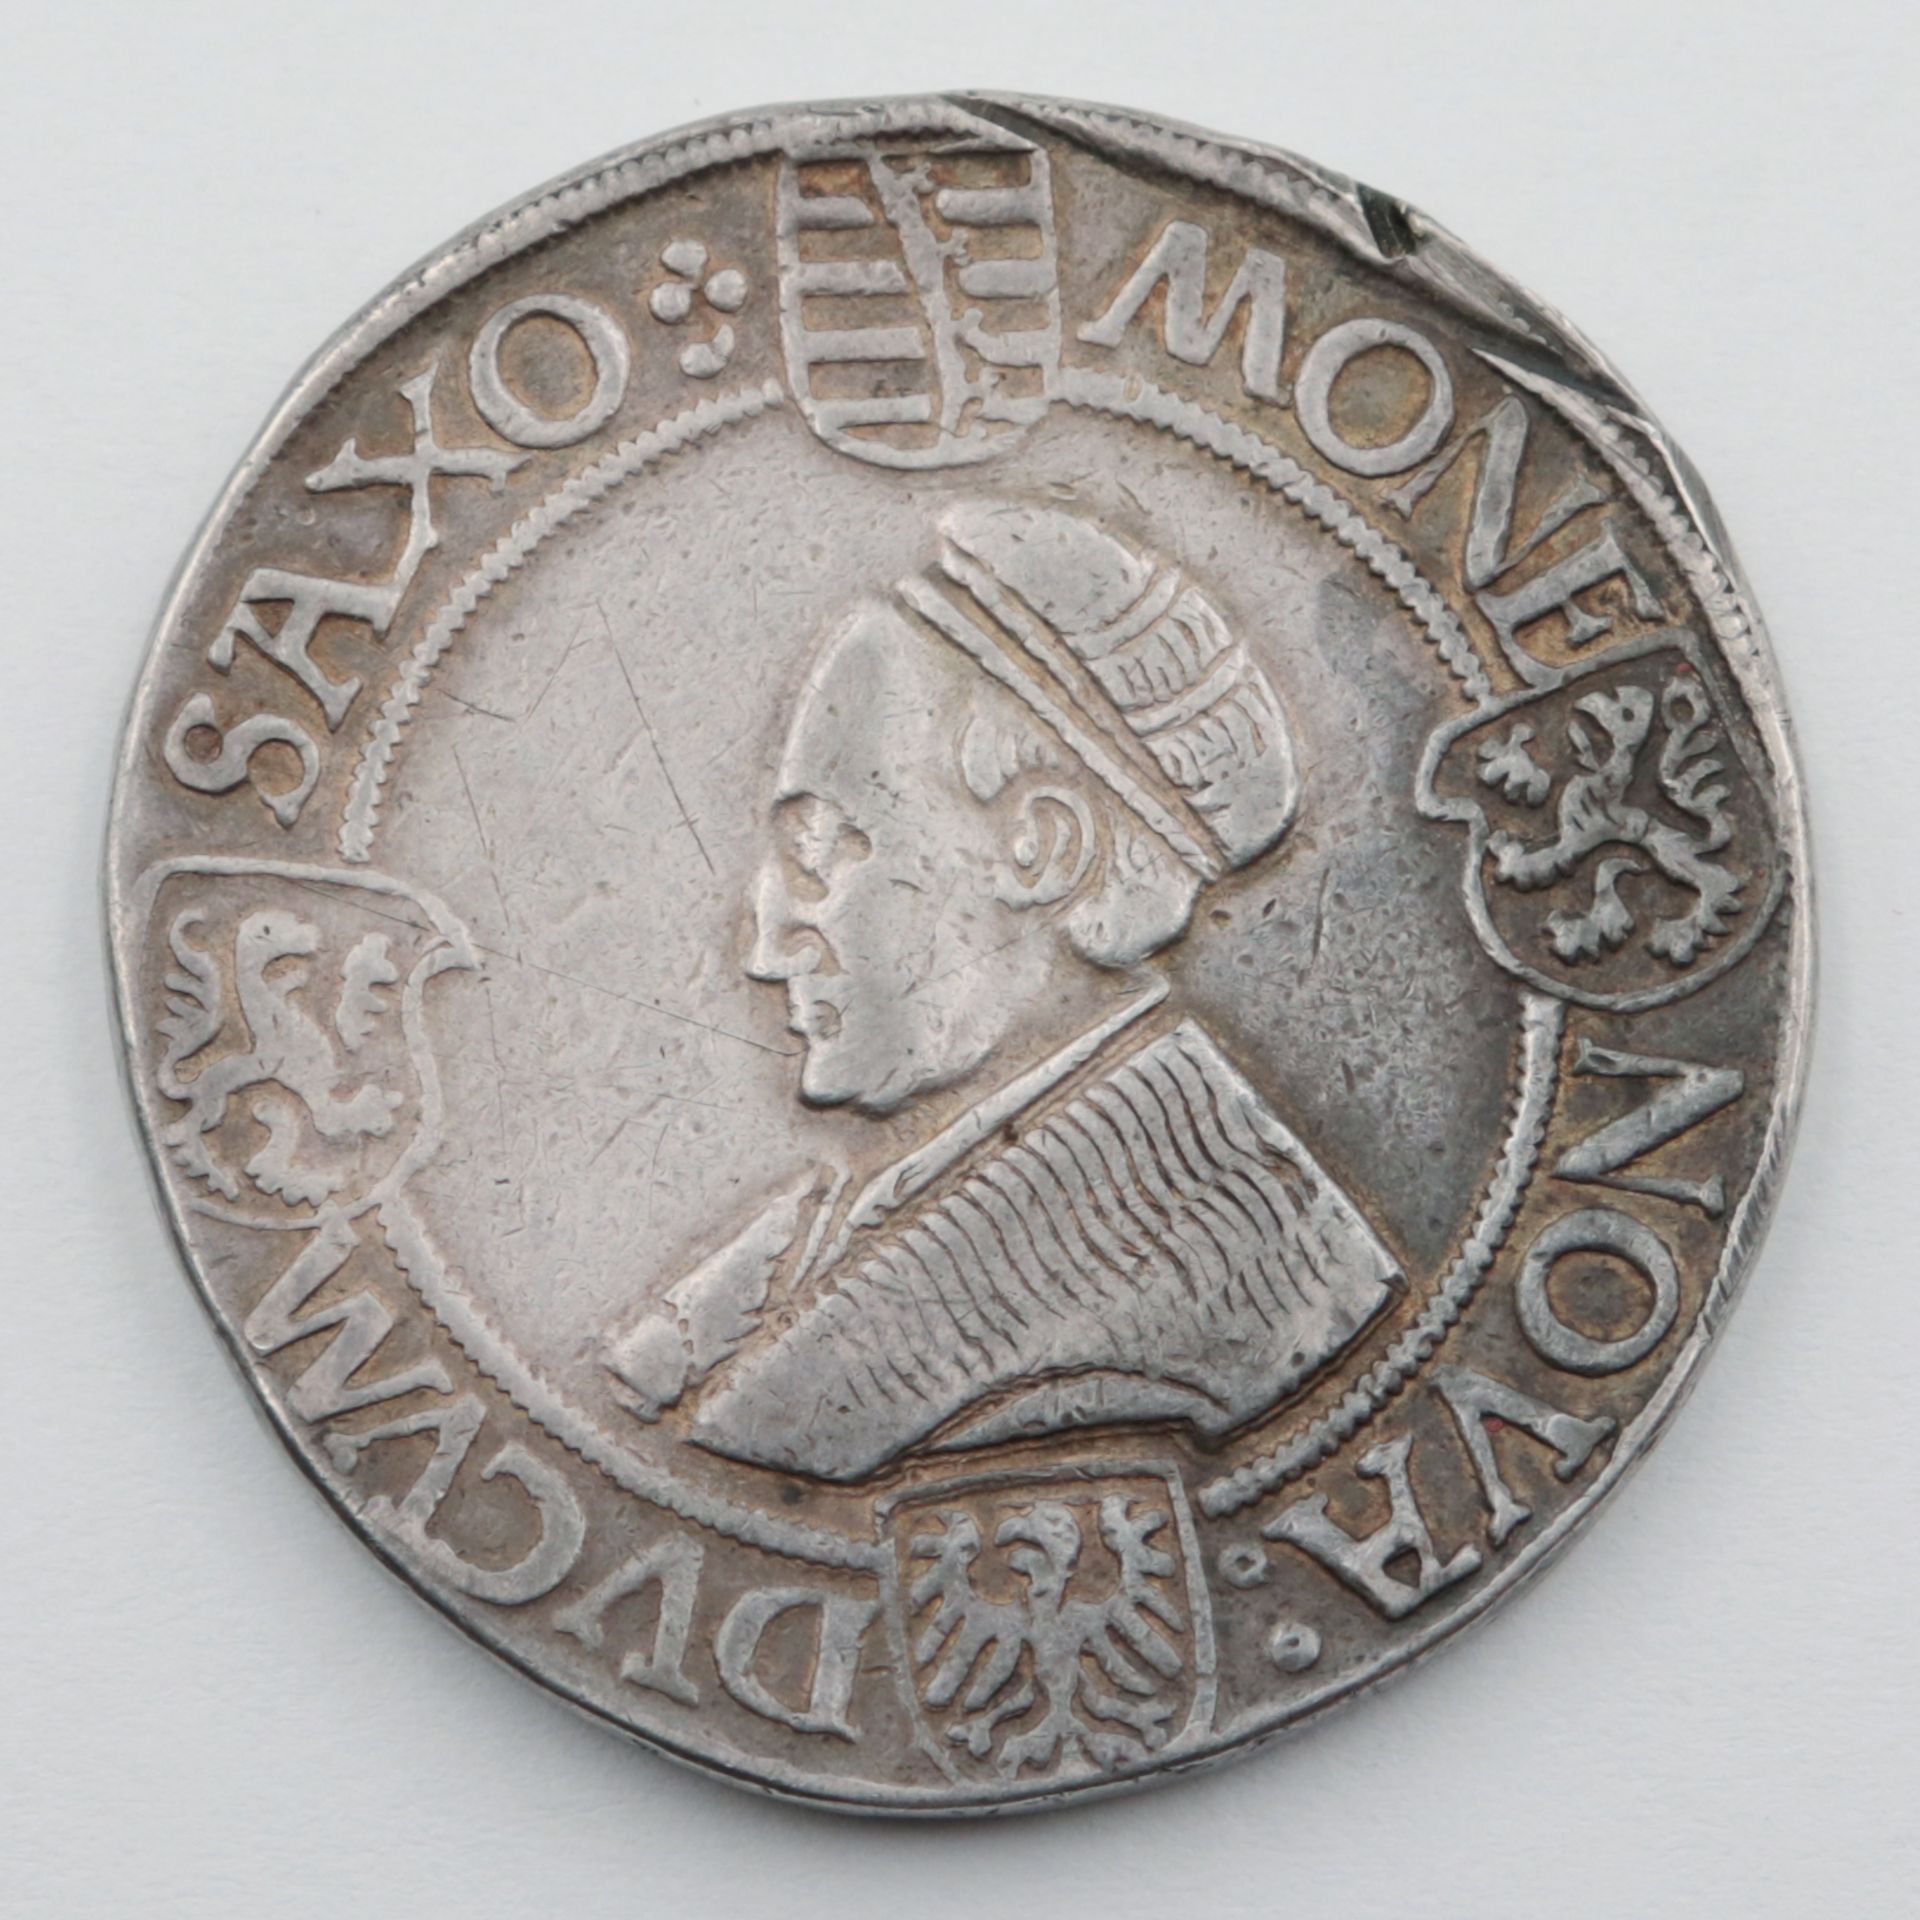 Sachsen Silbermünze, Guldengroschen, Sachsen o. J., Johann der Beständige und Georg 1525-30, - Bild 2 aus 2